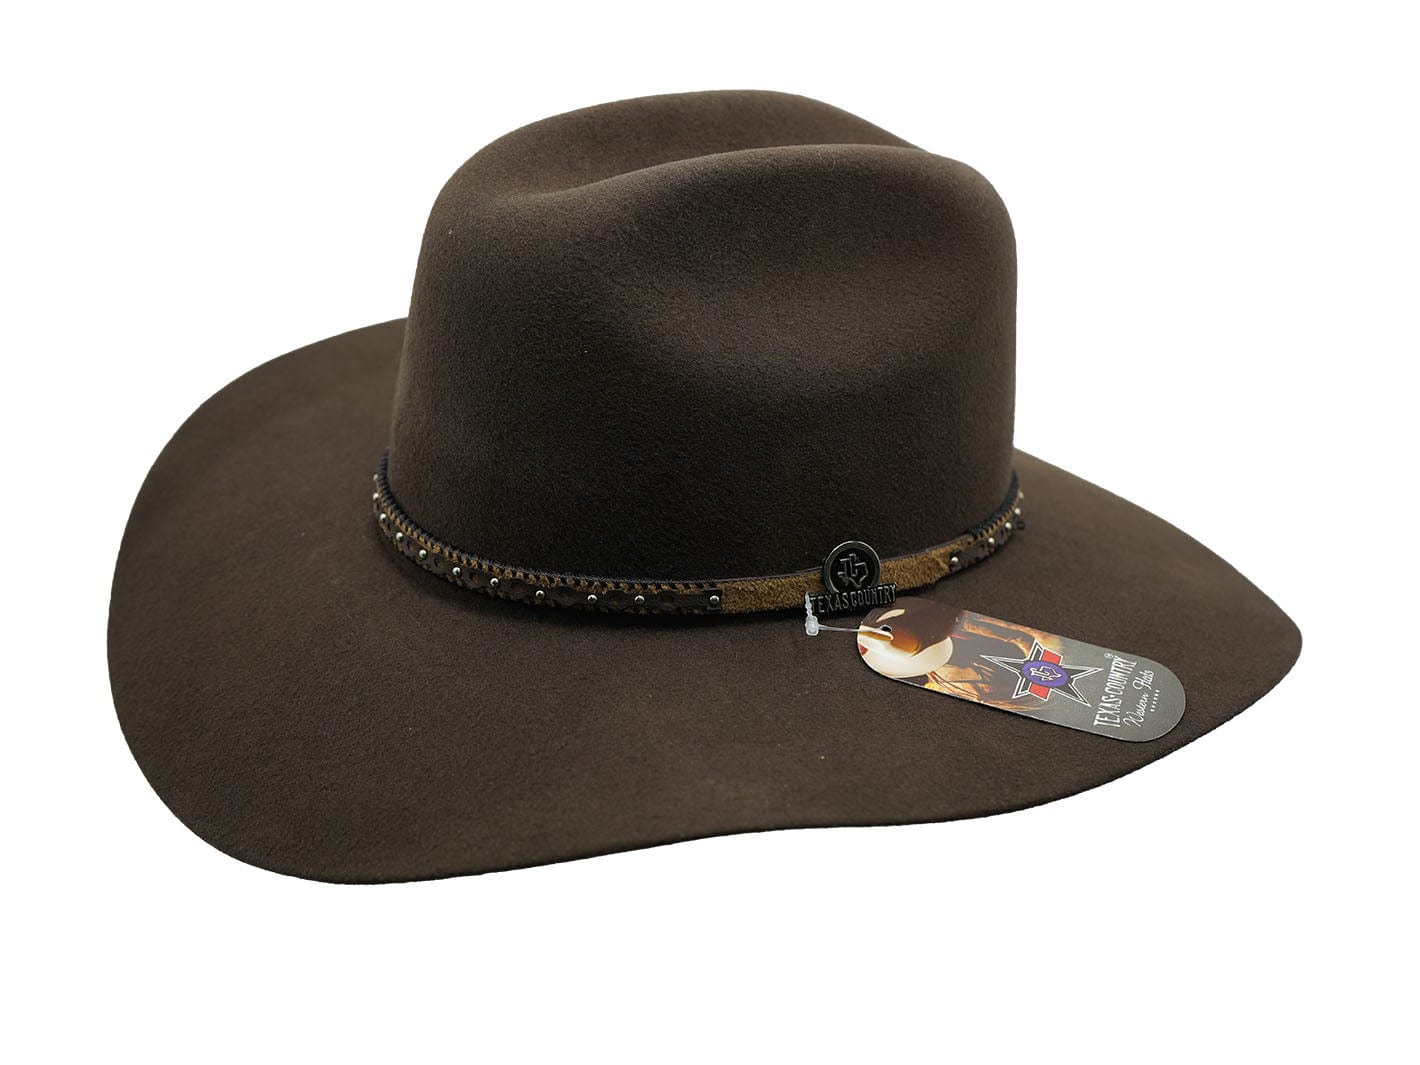 Texas Country Western Felt Cowboy Hat Brown